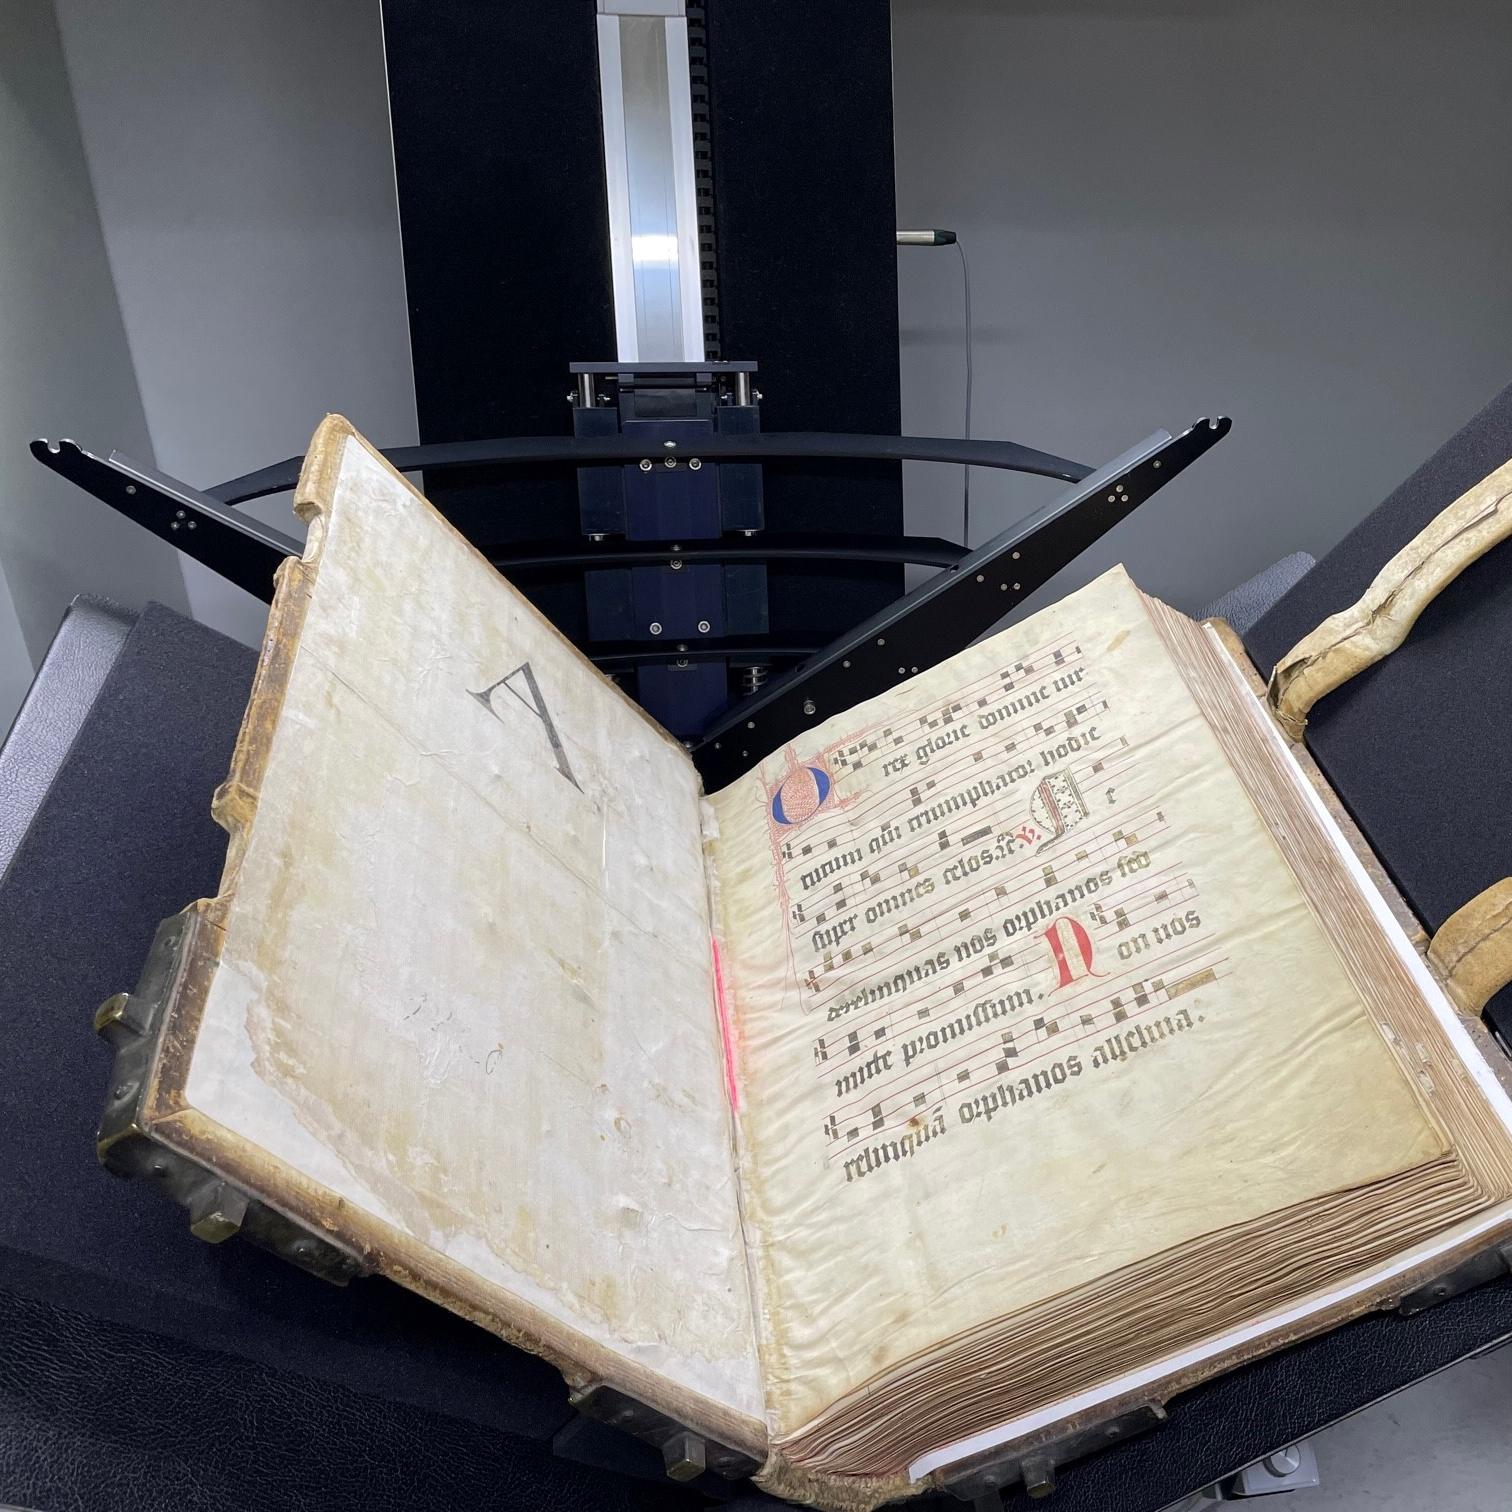 Unter anderem wird das Chorbuch der Karmeliter aus dem Dommuseum Mainz (Signatur B 330 C, CC0) in der Universitätsbibliothek Mainz digitalisiert.